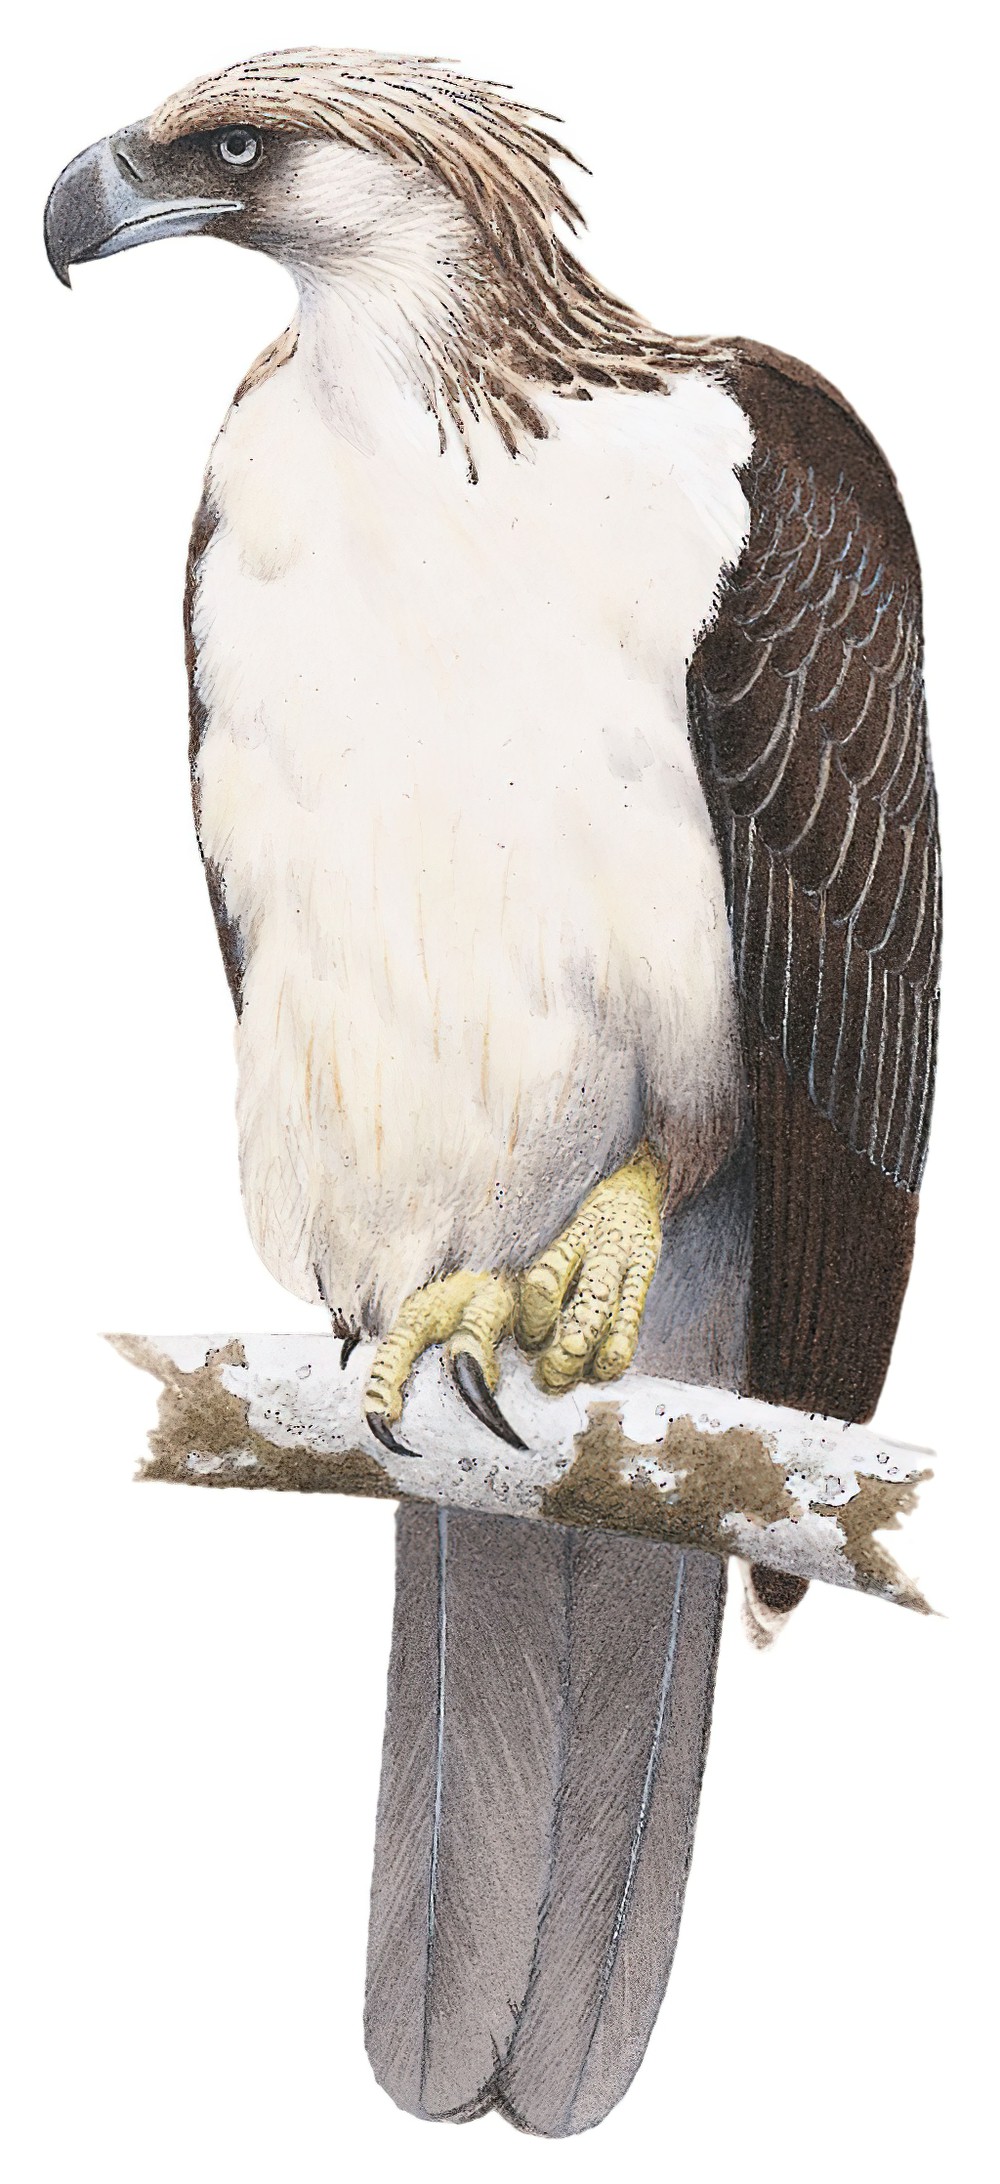 Philippine Eagle / Pithecophaga jefferyi